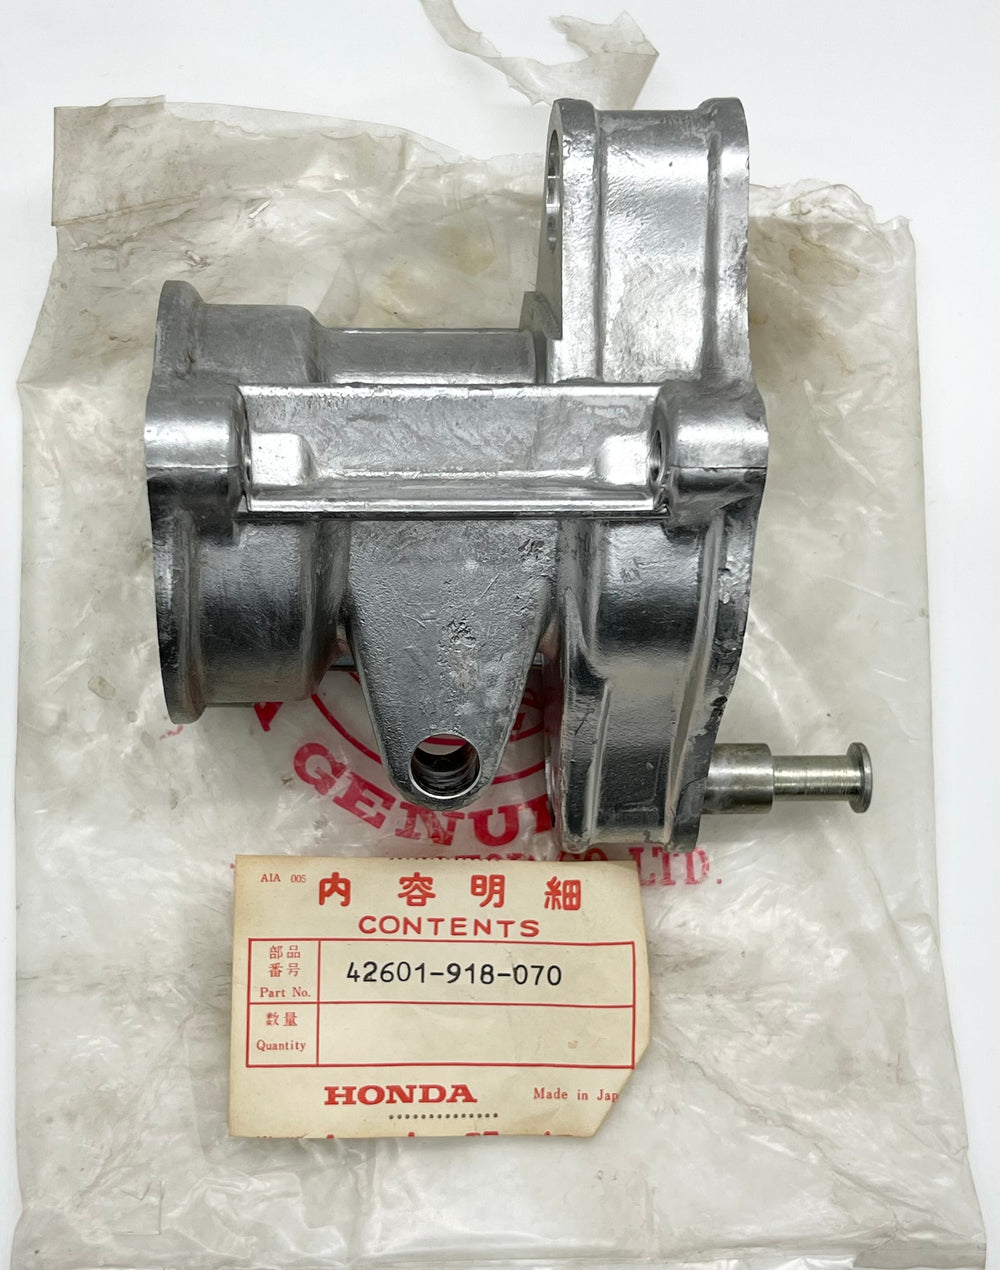 NOS Honda ATC90 1970-78 center rear axle hub case # 42601-918-070